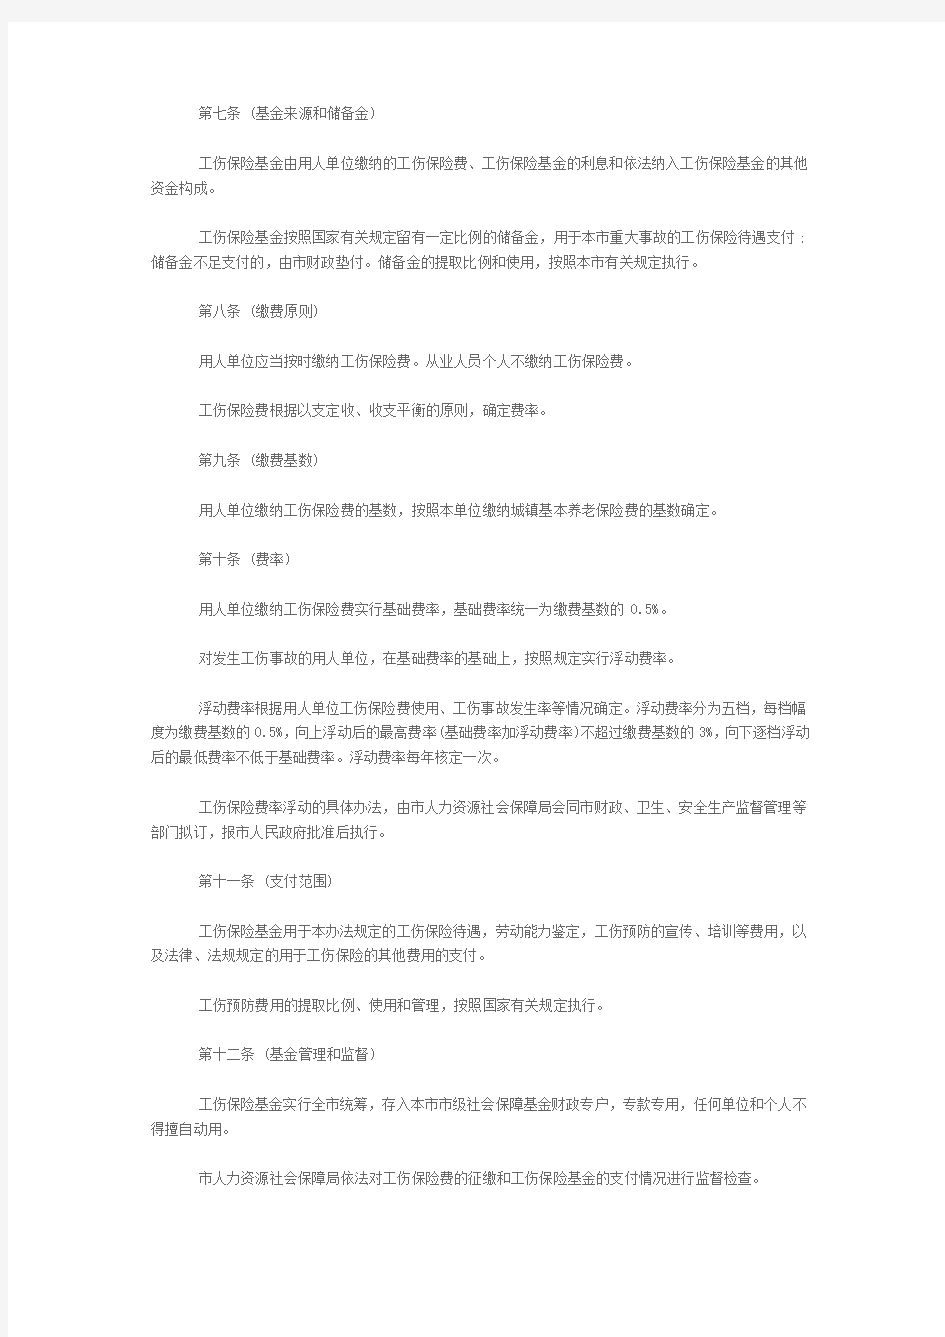 2017年上海市工伤保险条例